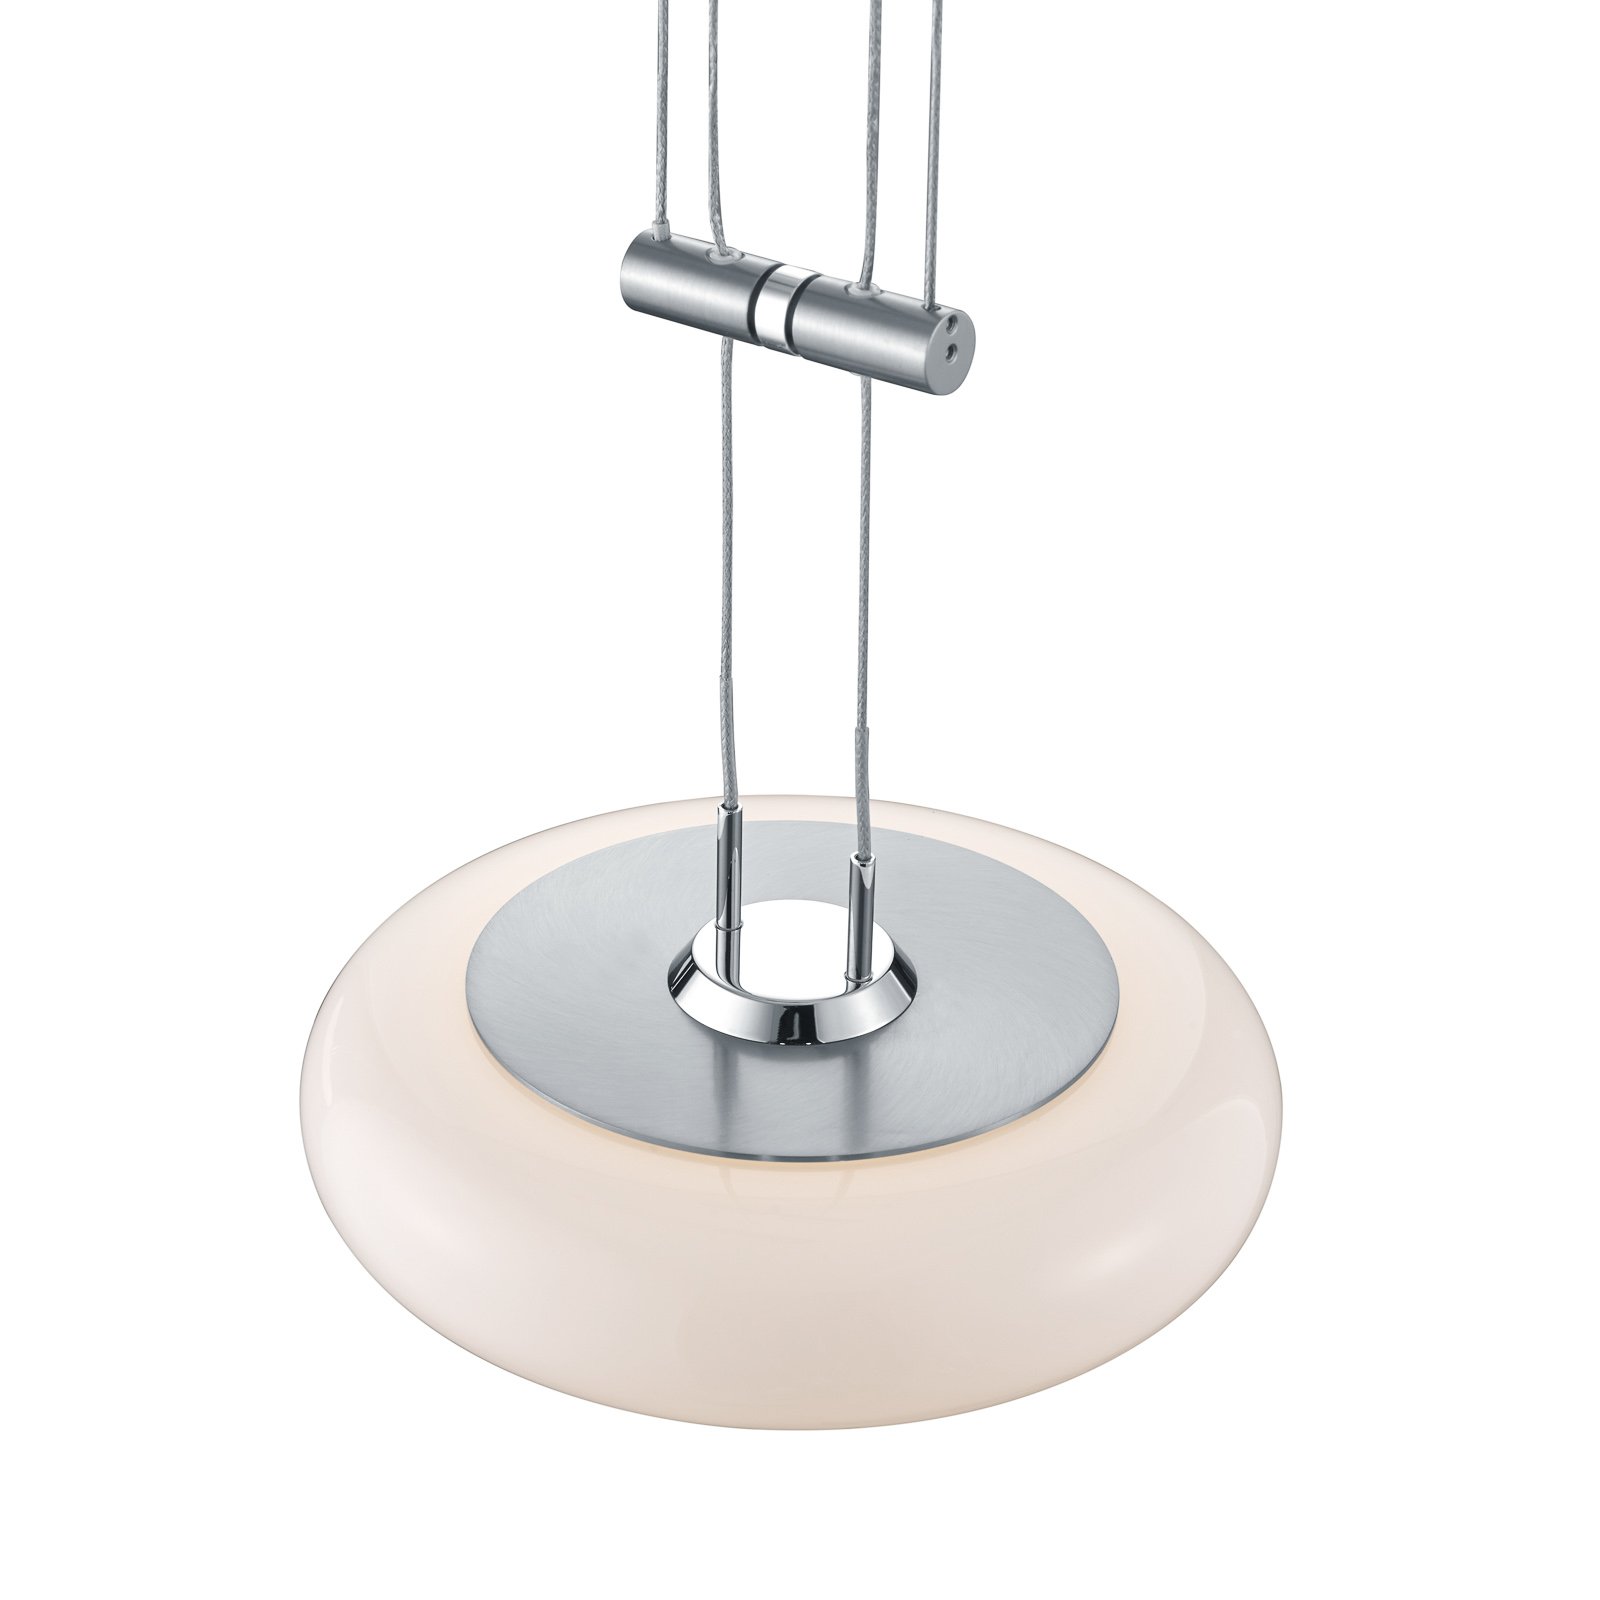 BANKAMP Centa hanglamp 2-lamps nikkel